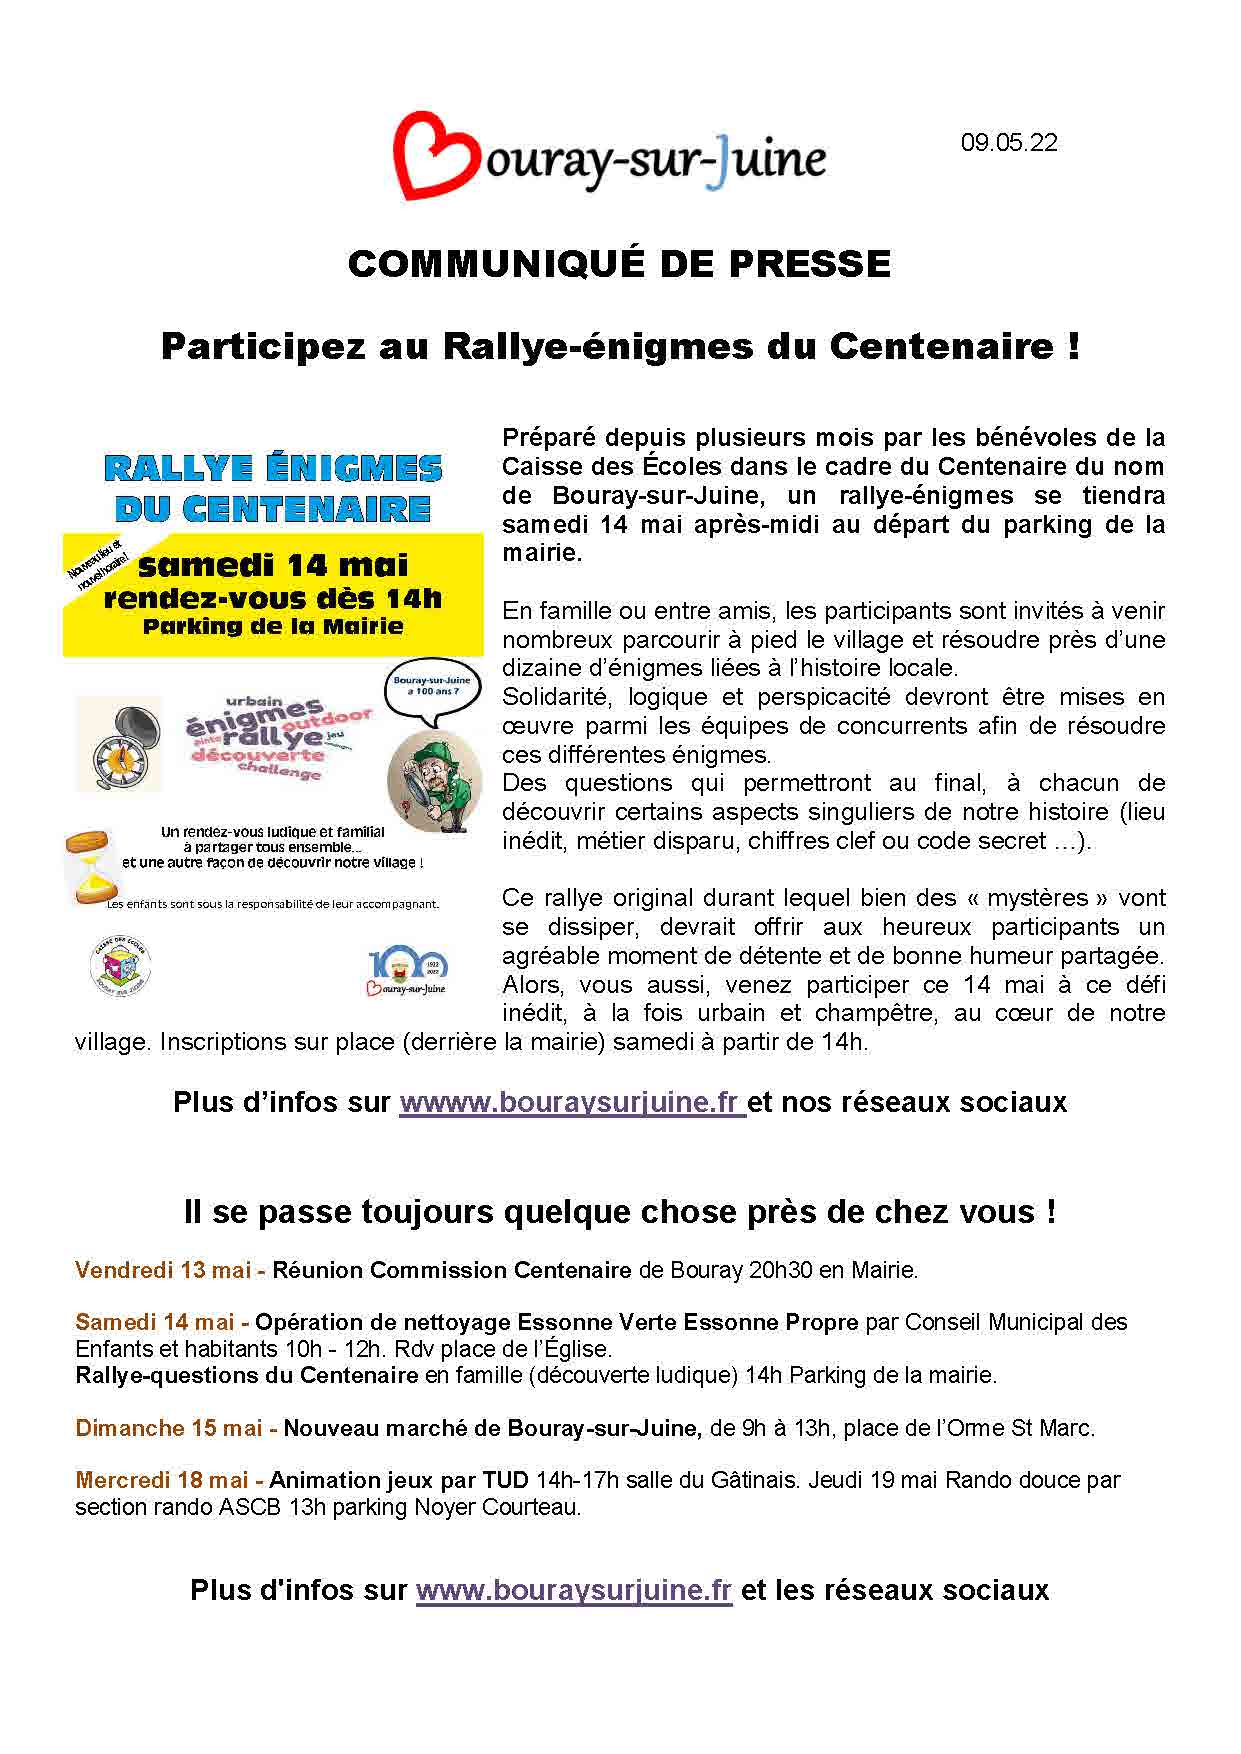 2022.05.09 communiqué de presse Rallye énigmes du Centenaire de Bouray sur Juine